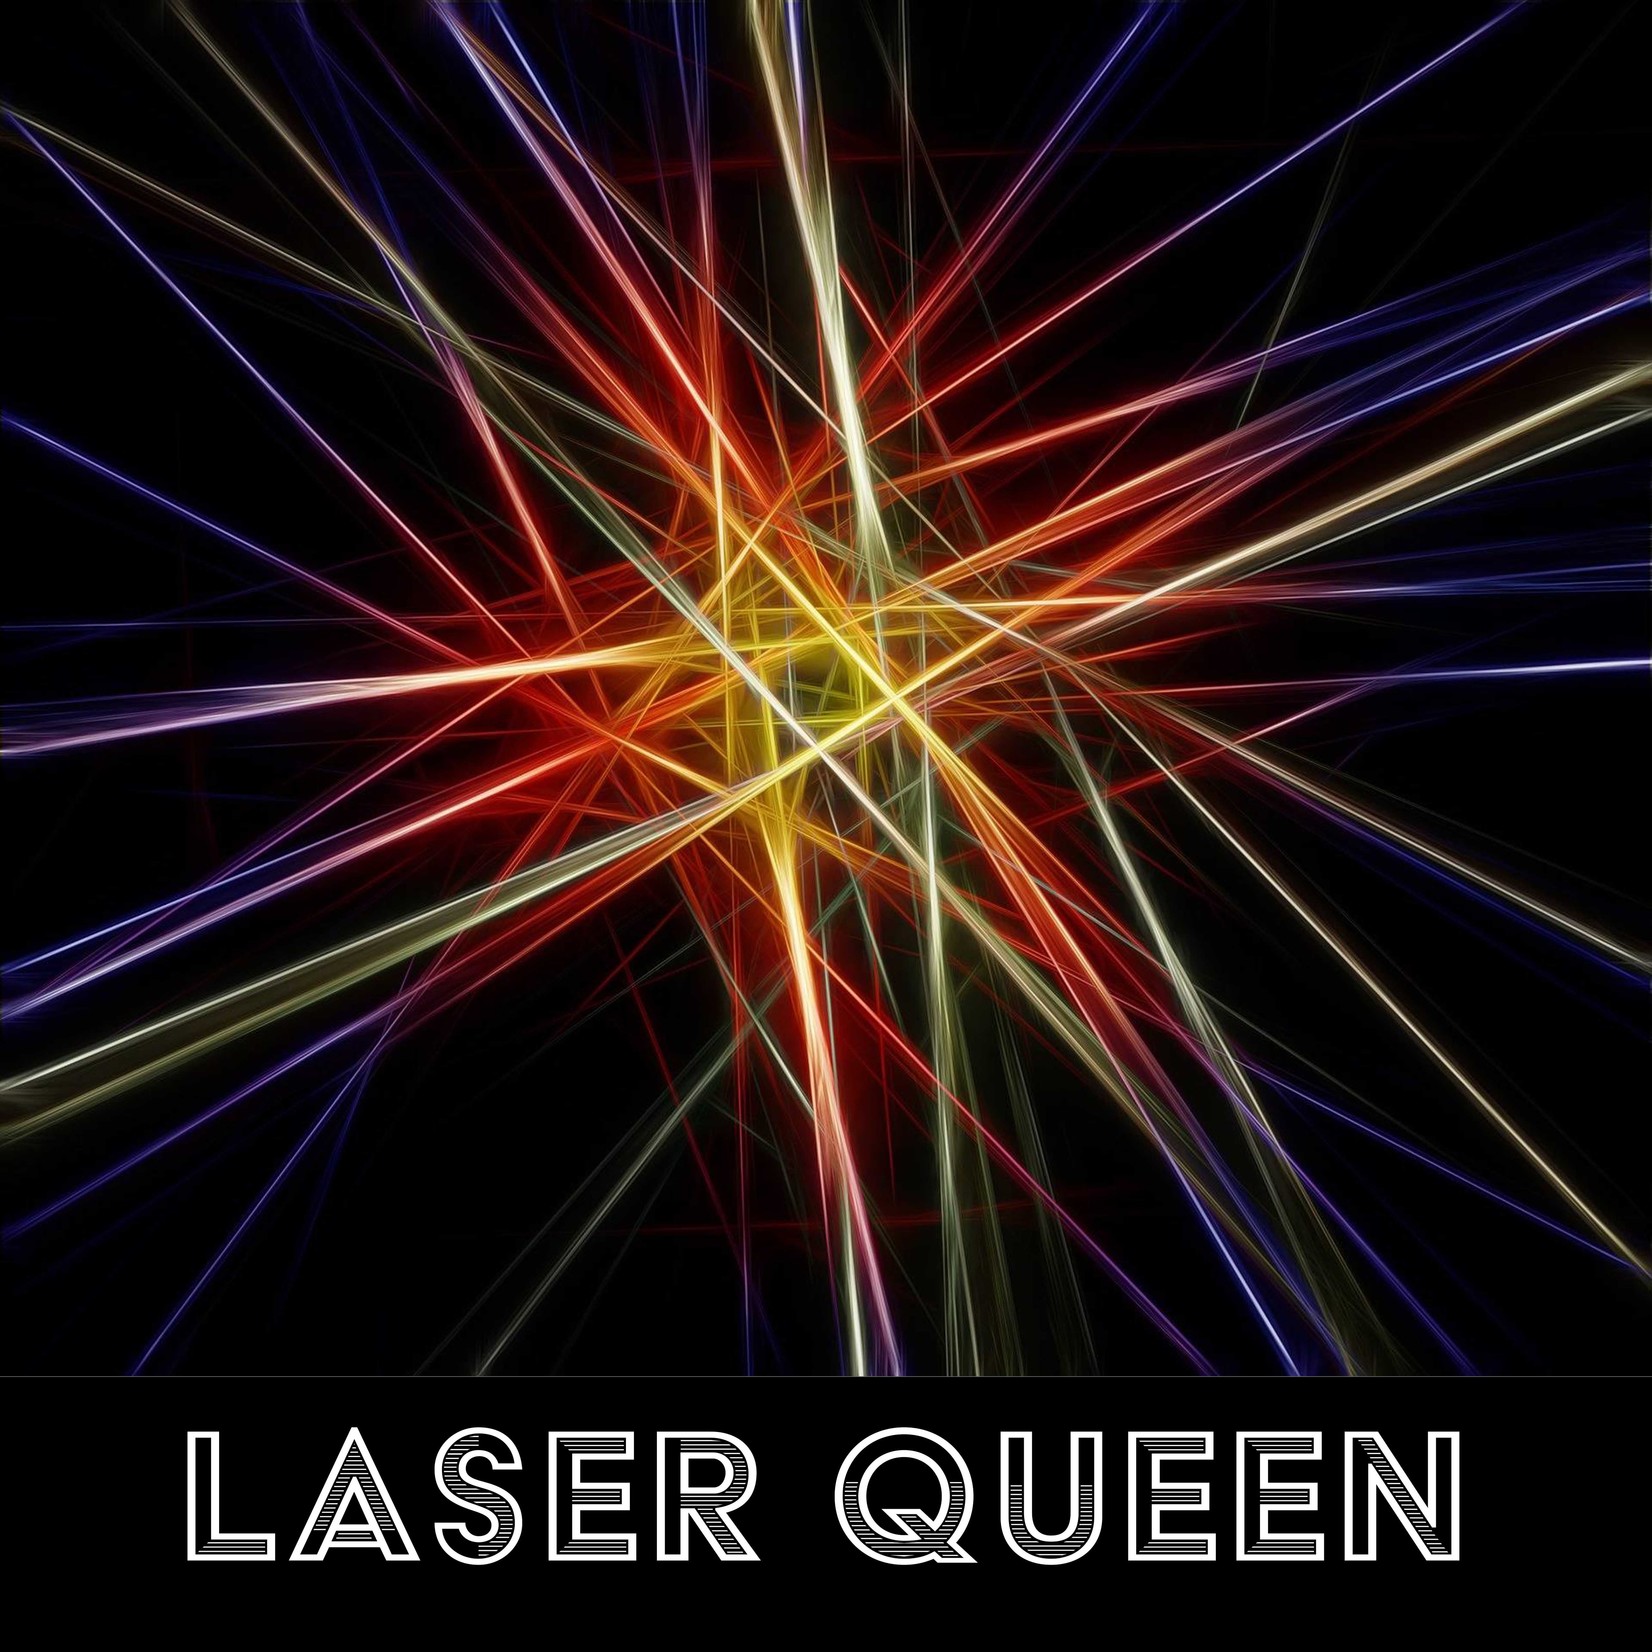 Laser Queen